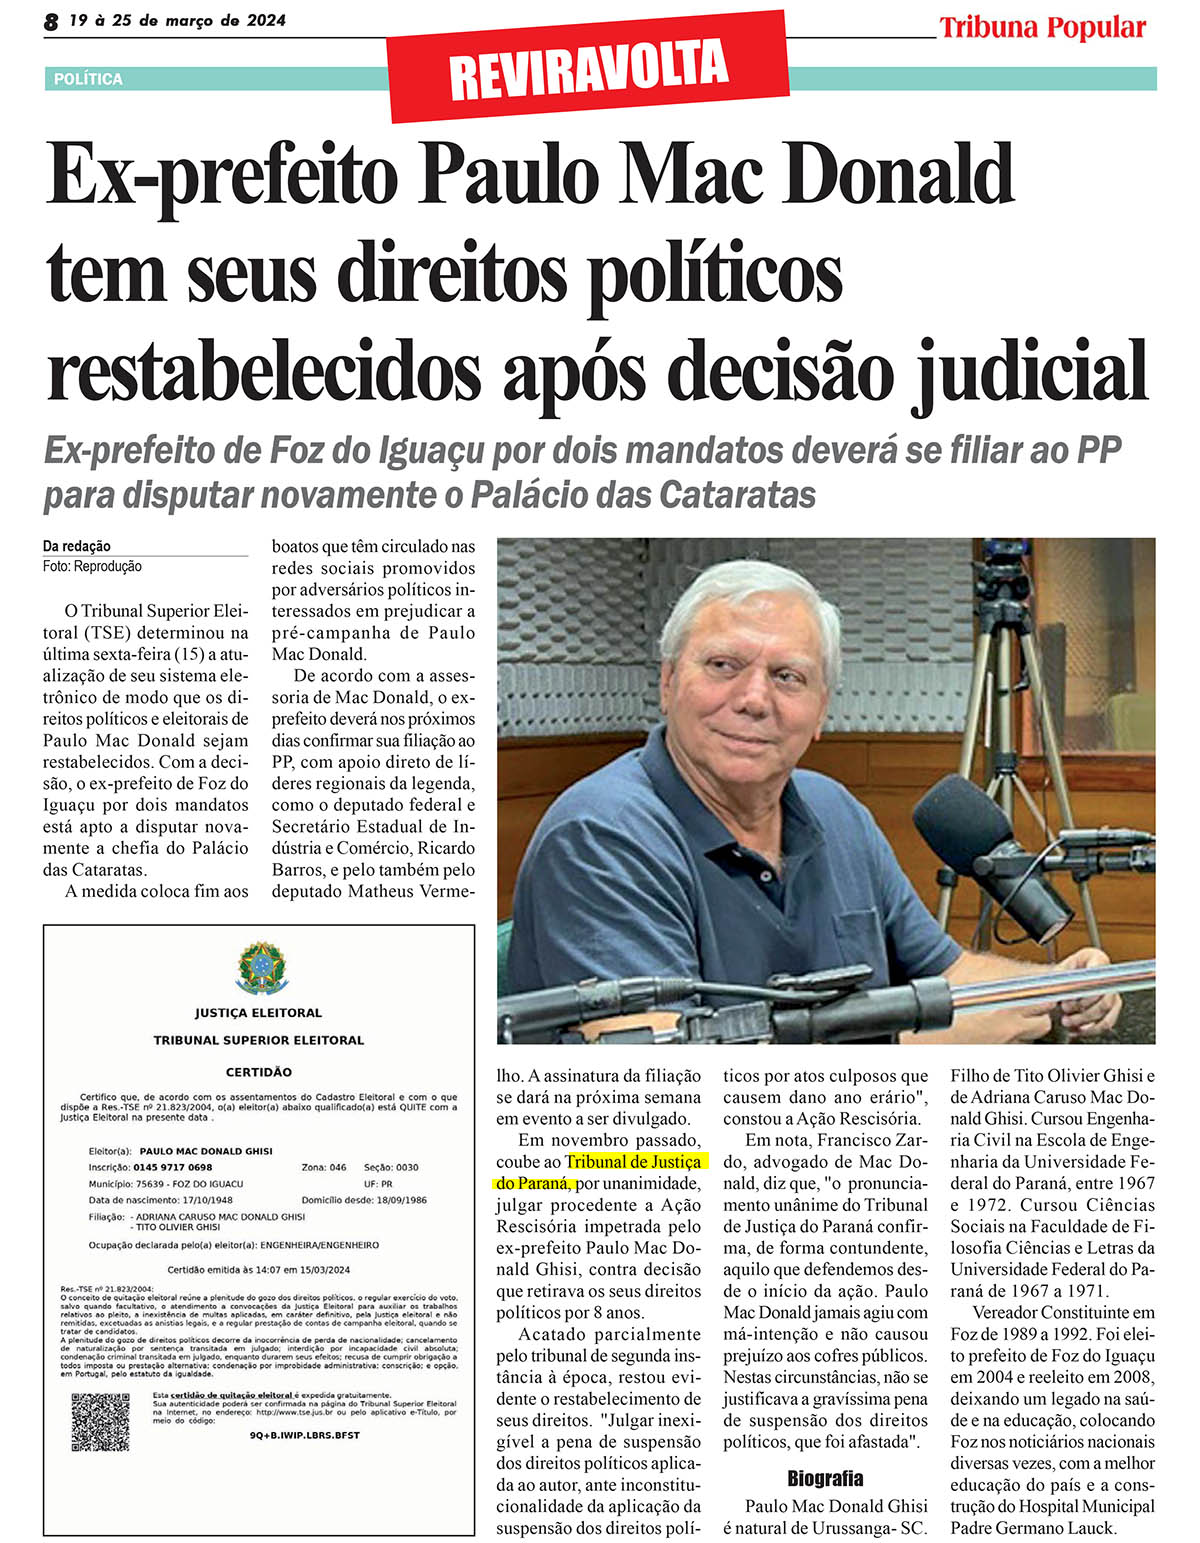 Ex-prefeito Paulo Mac Donald tem seus direitos políticos restabelecidos após decisão judicial - image 1